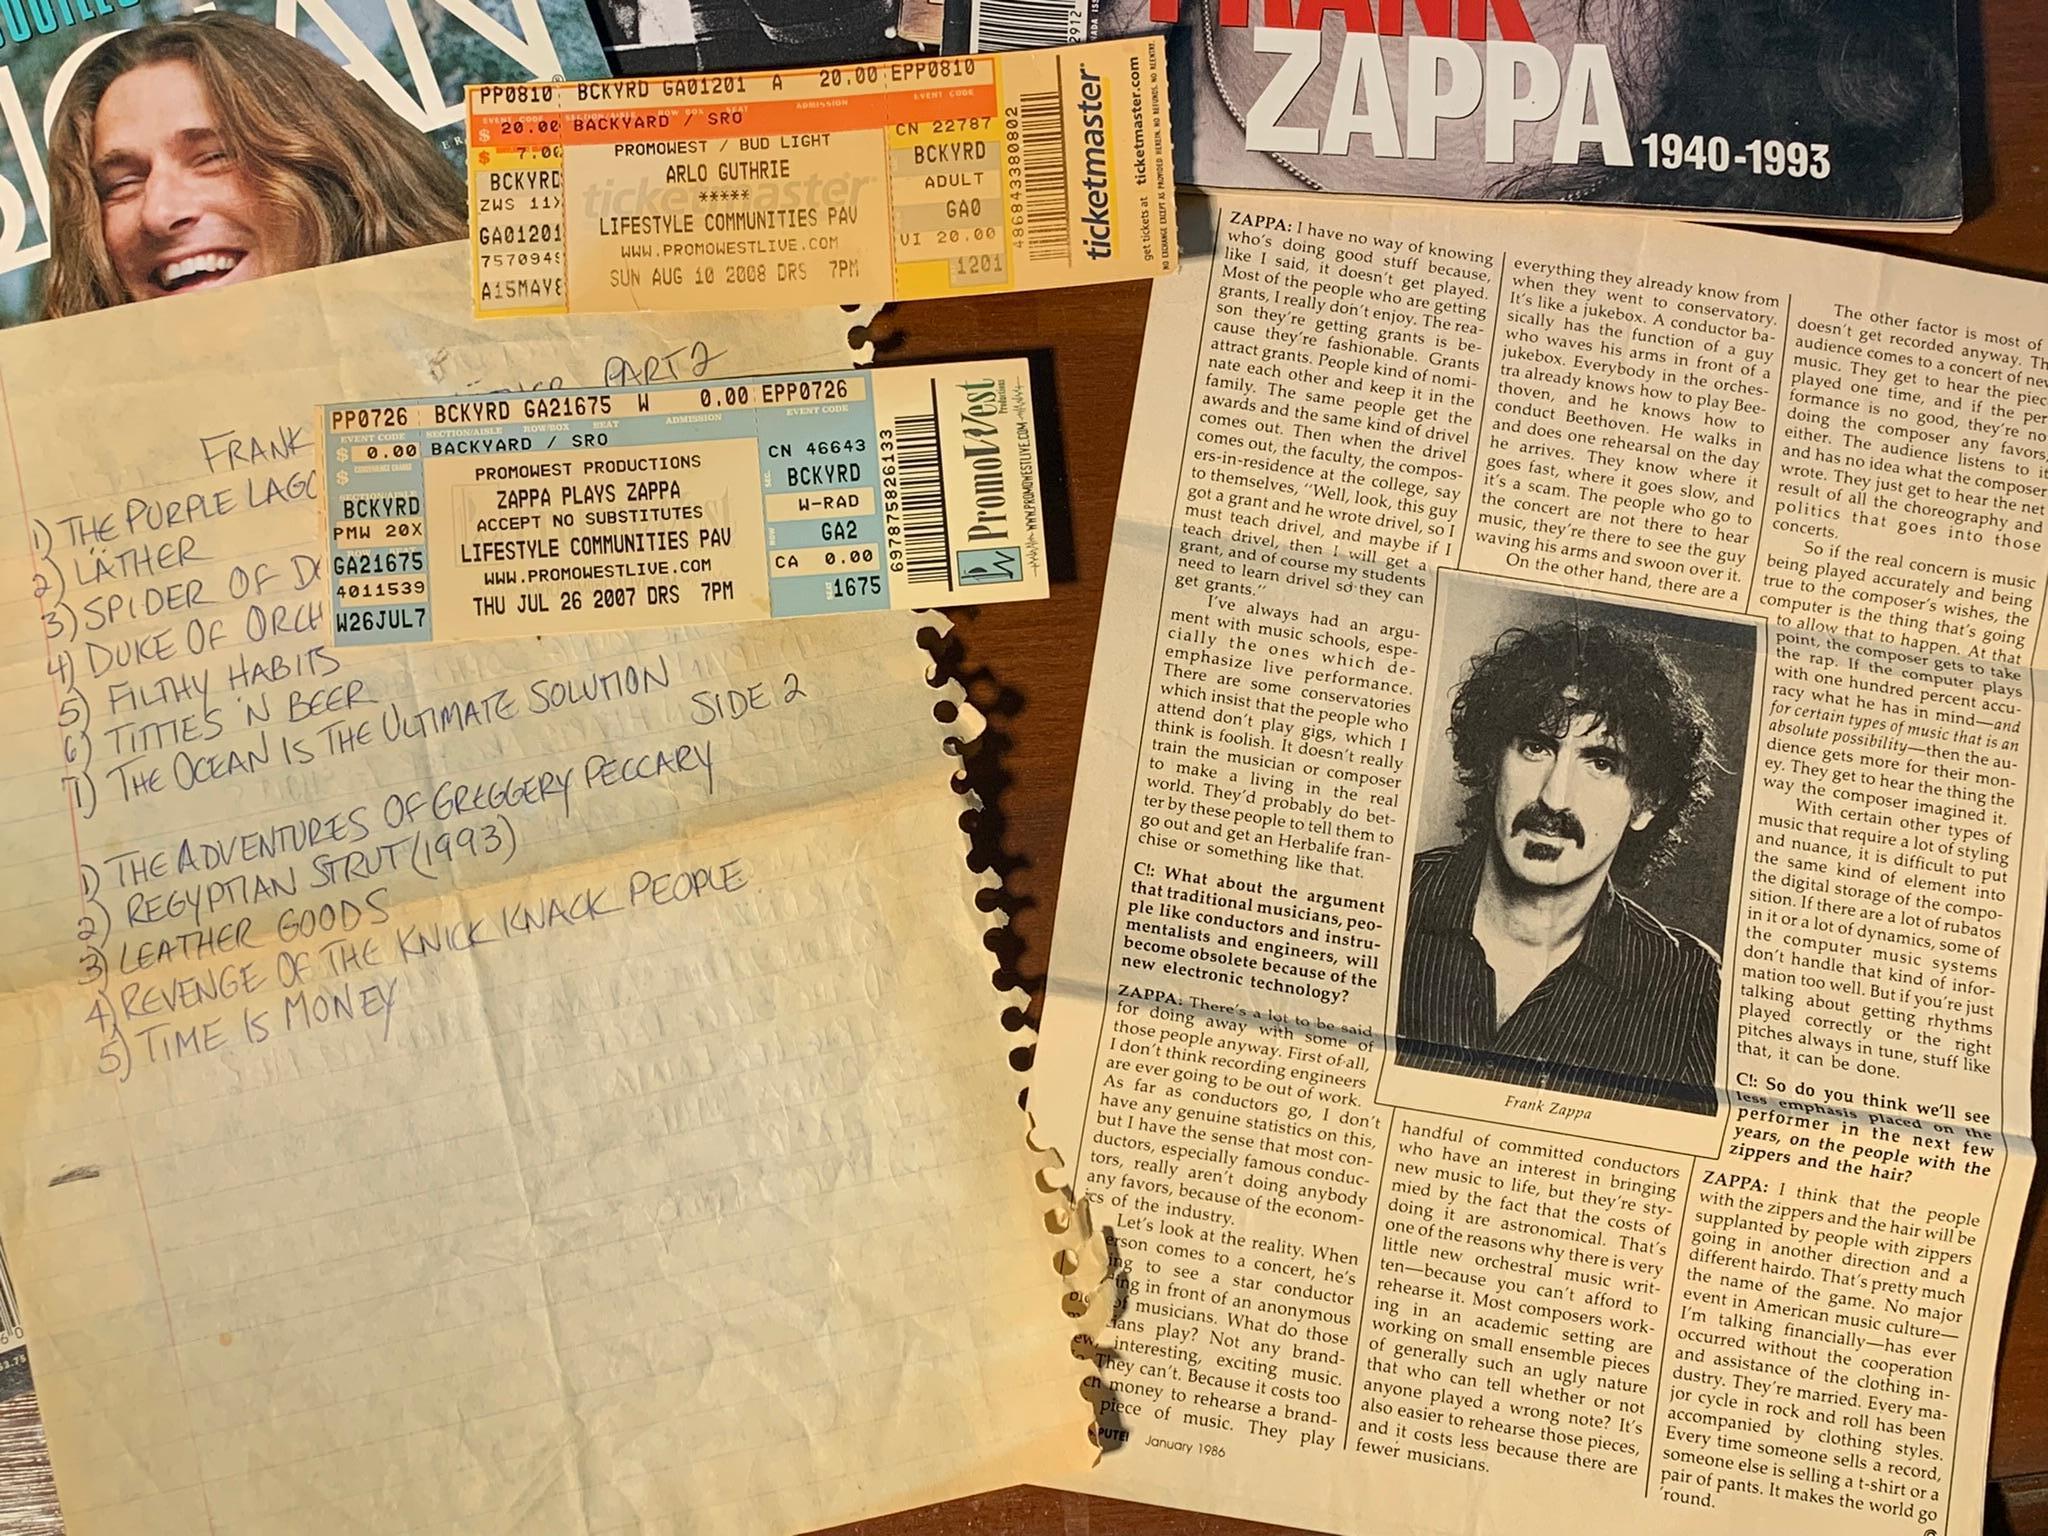 Large Group of Frank Zappa Memorabilia